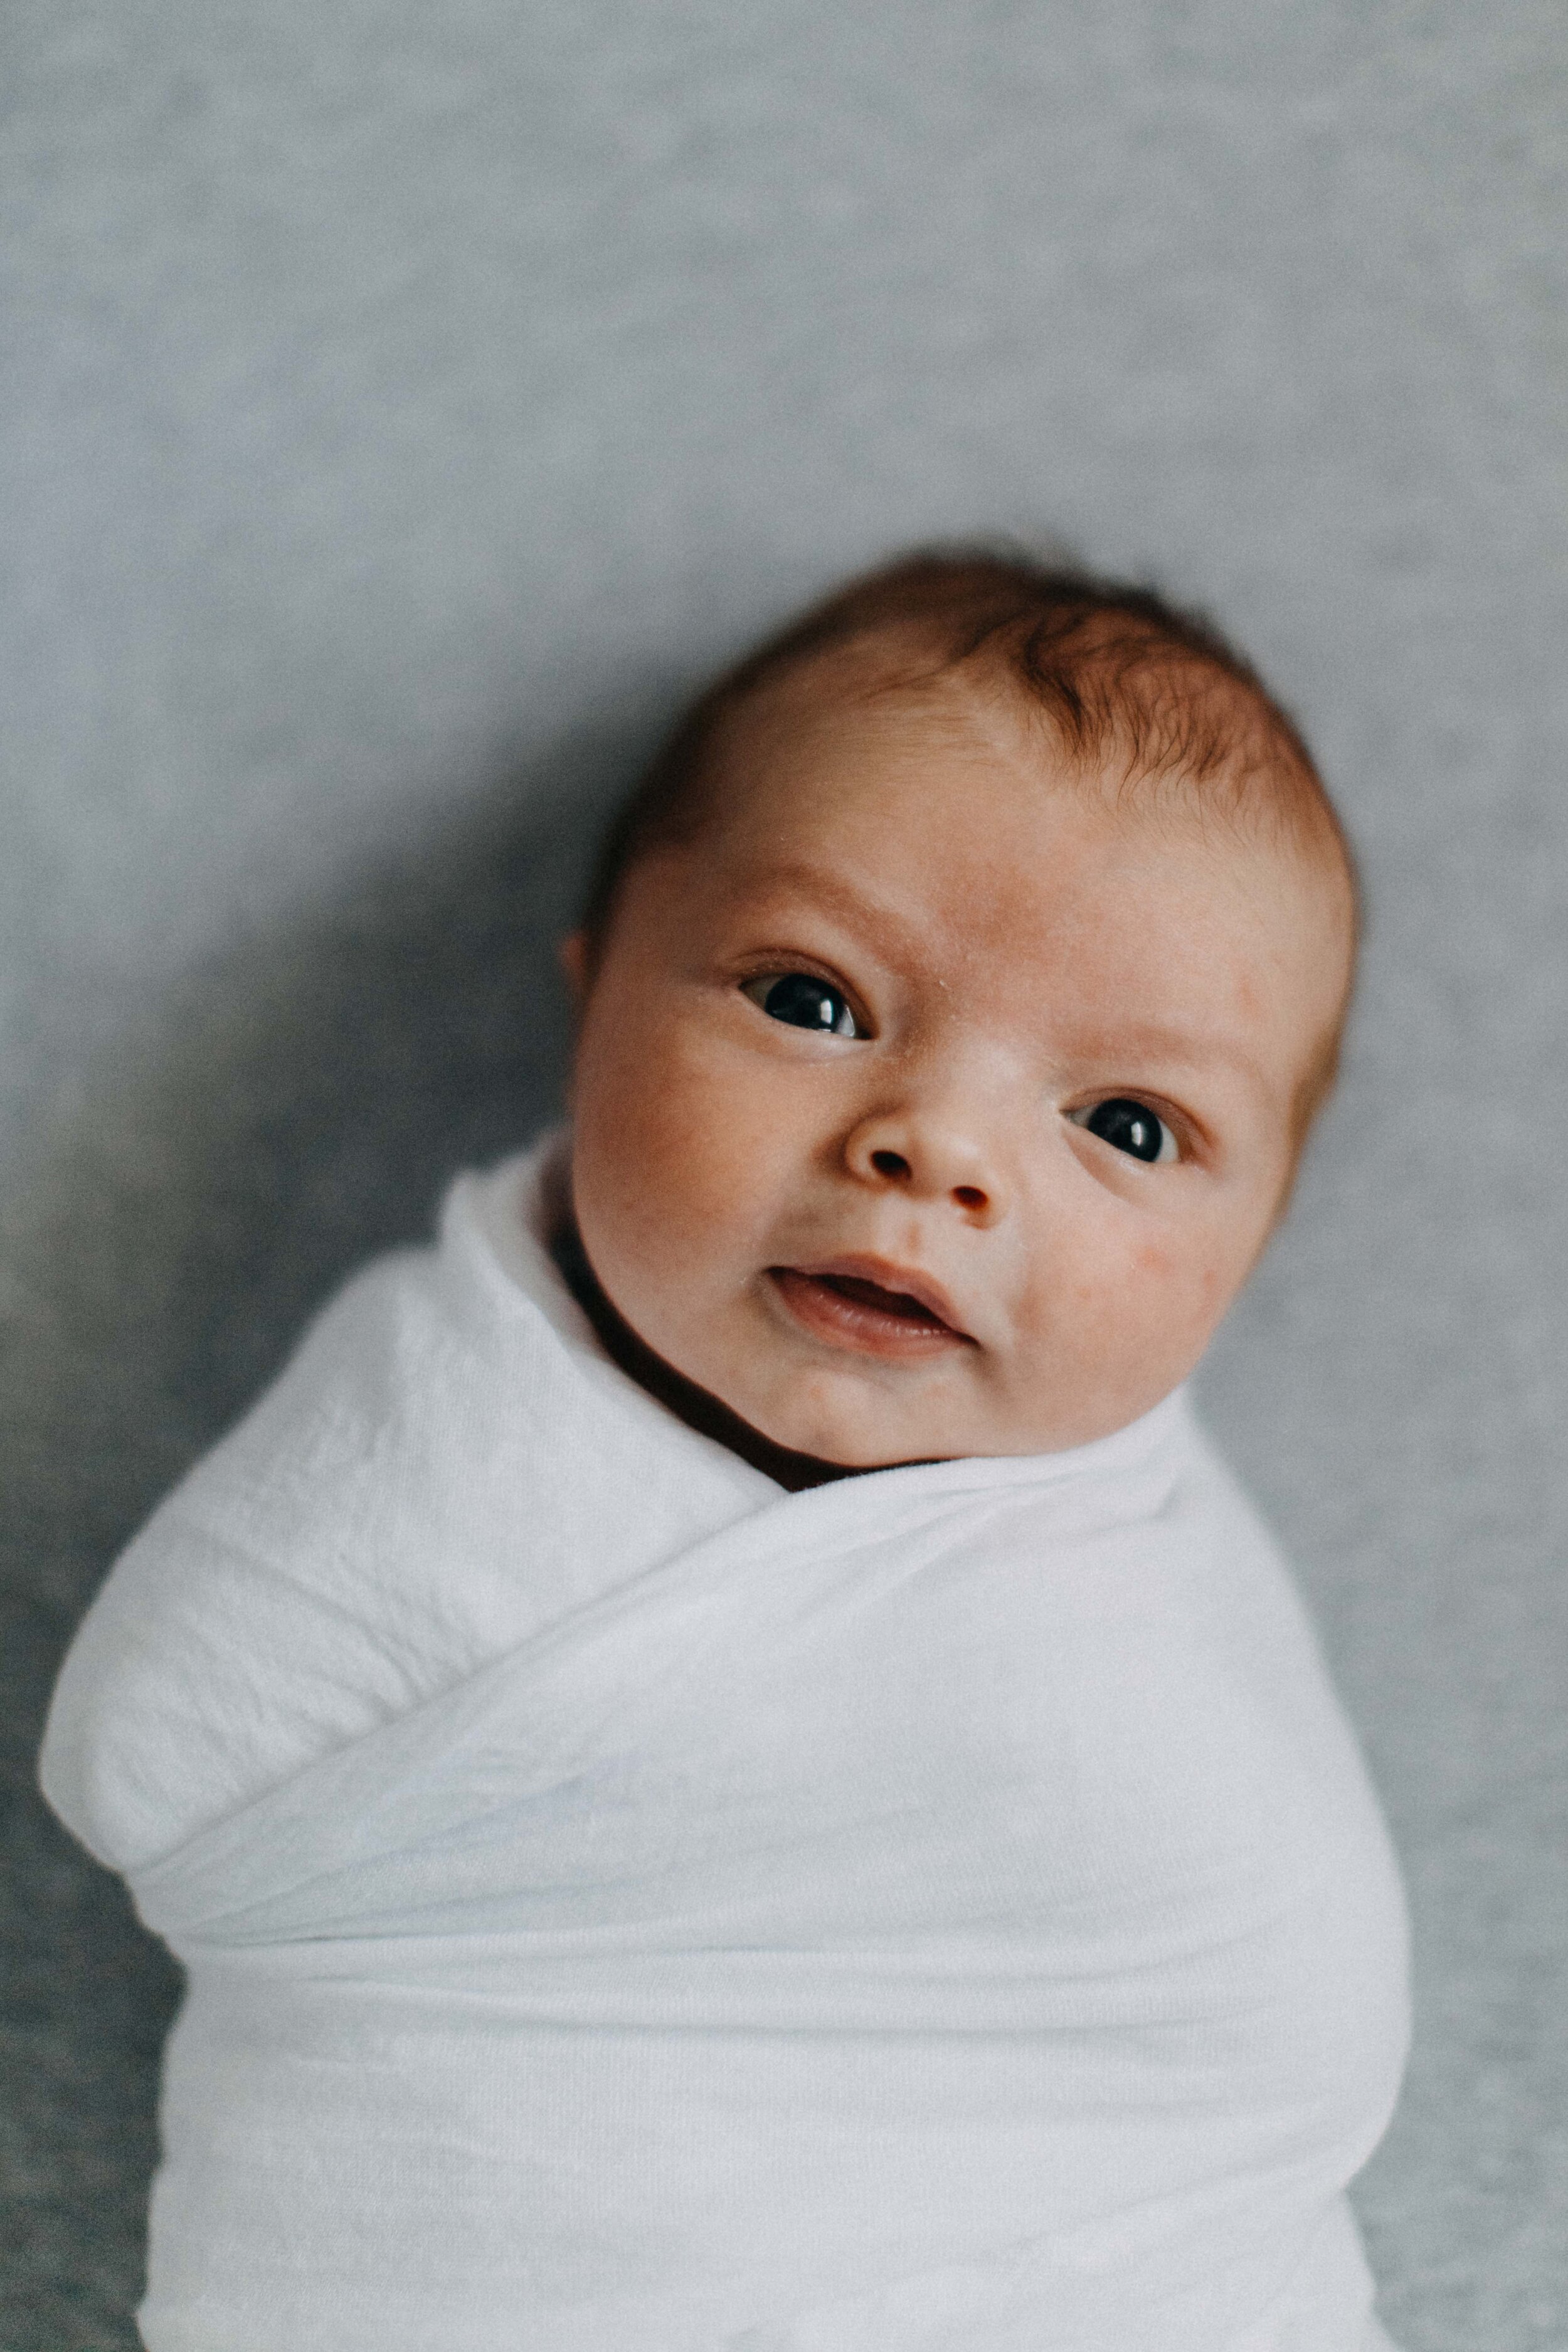 camden-newborn-photographer-lucas-brown-54.jpg